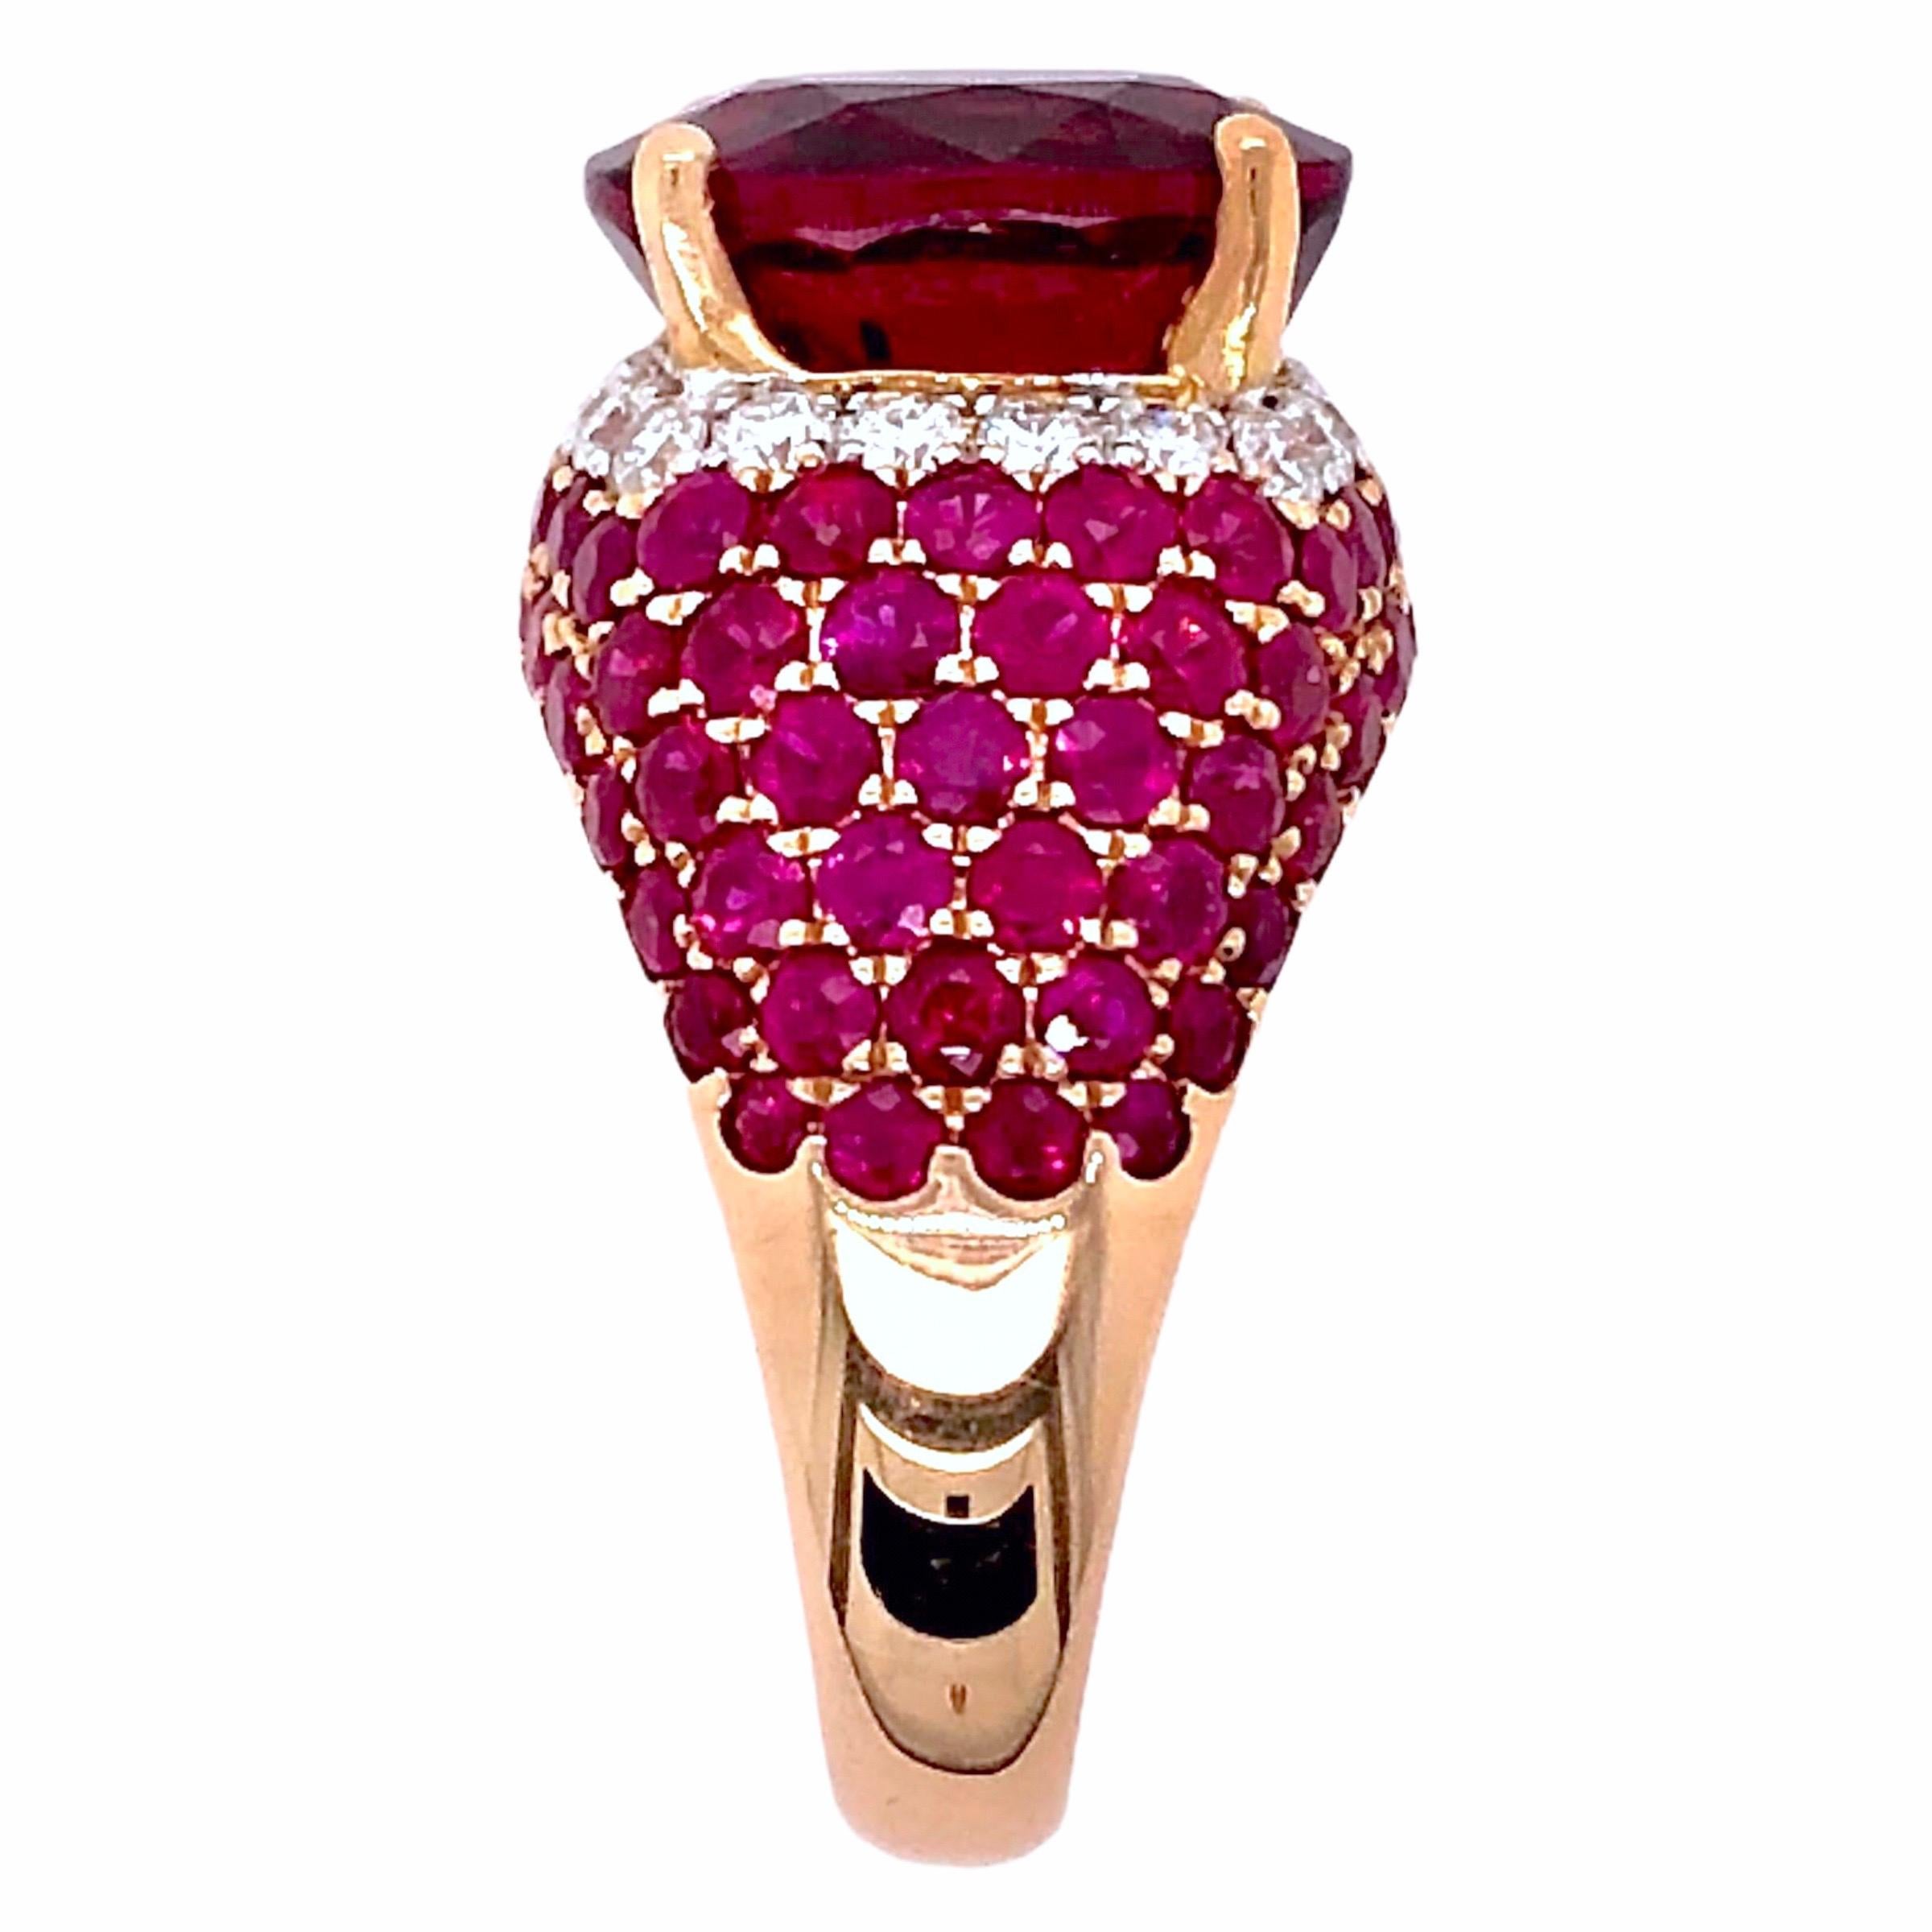 Modern Paris Craft House 6.21 Carat Rubellite Ruby Diamond Ring in 18 Karat Rose Gold For Sale